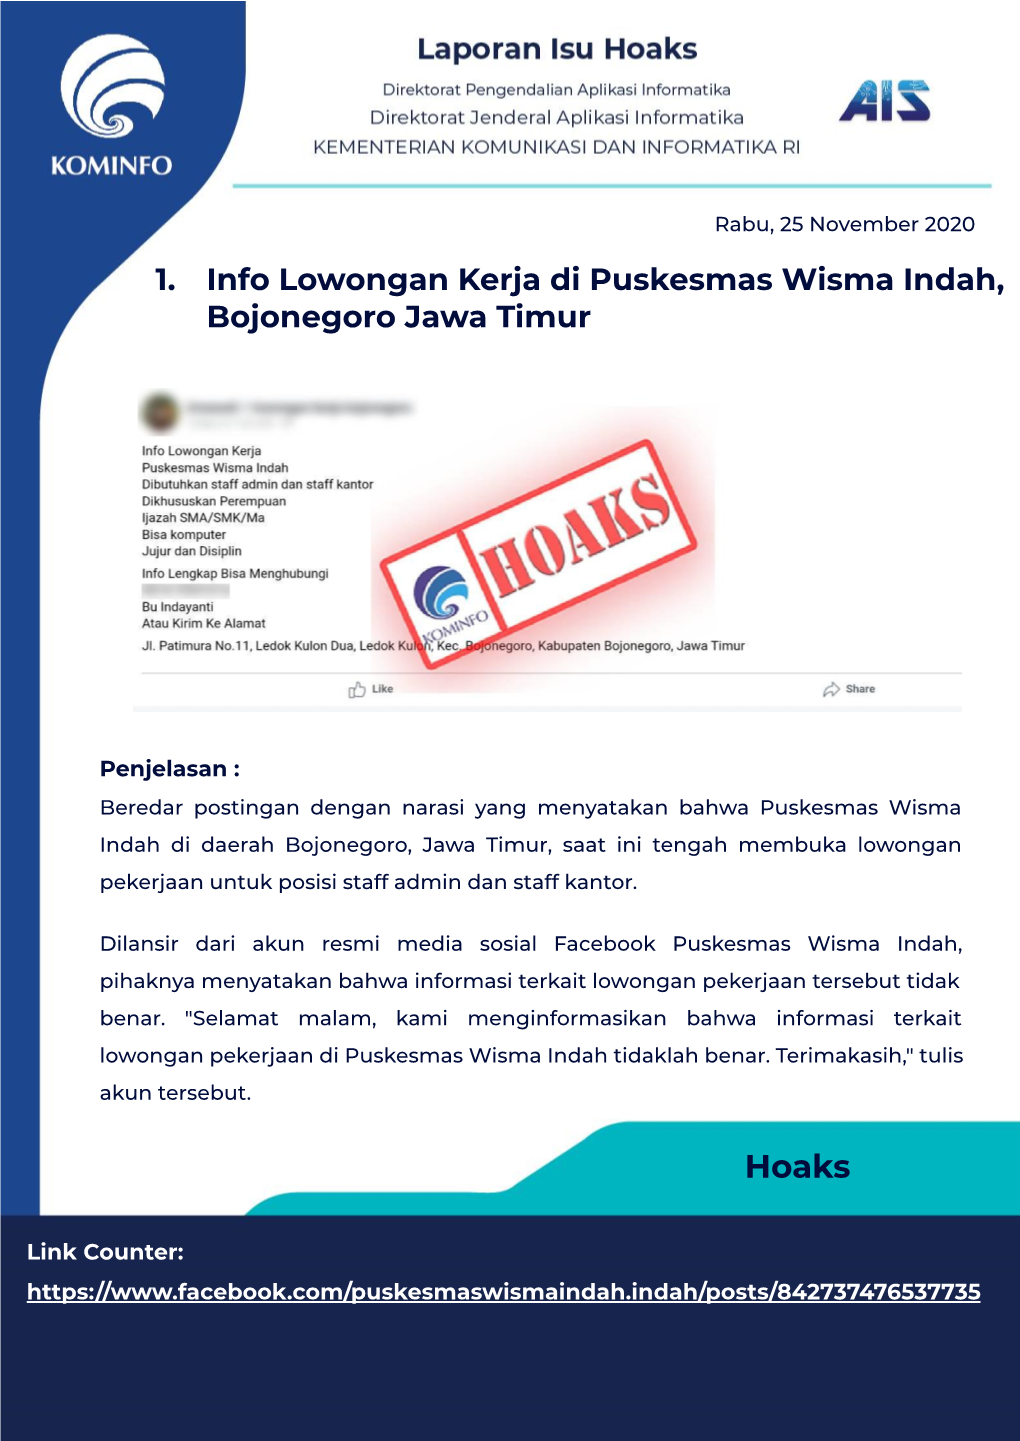 1. Info Lowongan Kerja Di Puskesmas Wisma Indah, Bojonegoro Jawa Timur